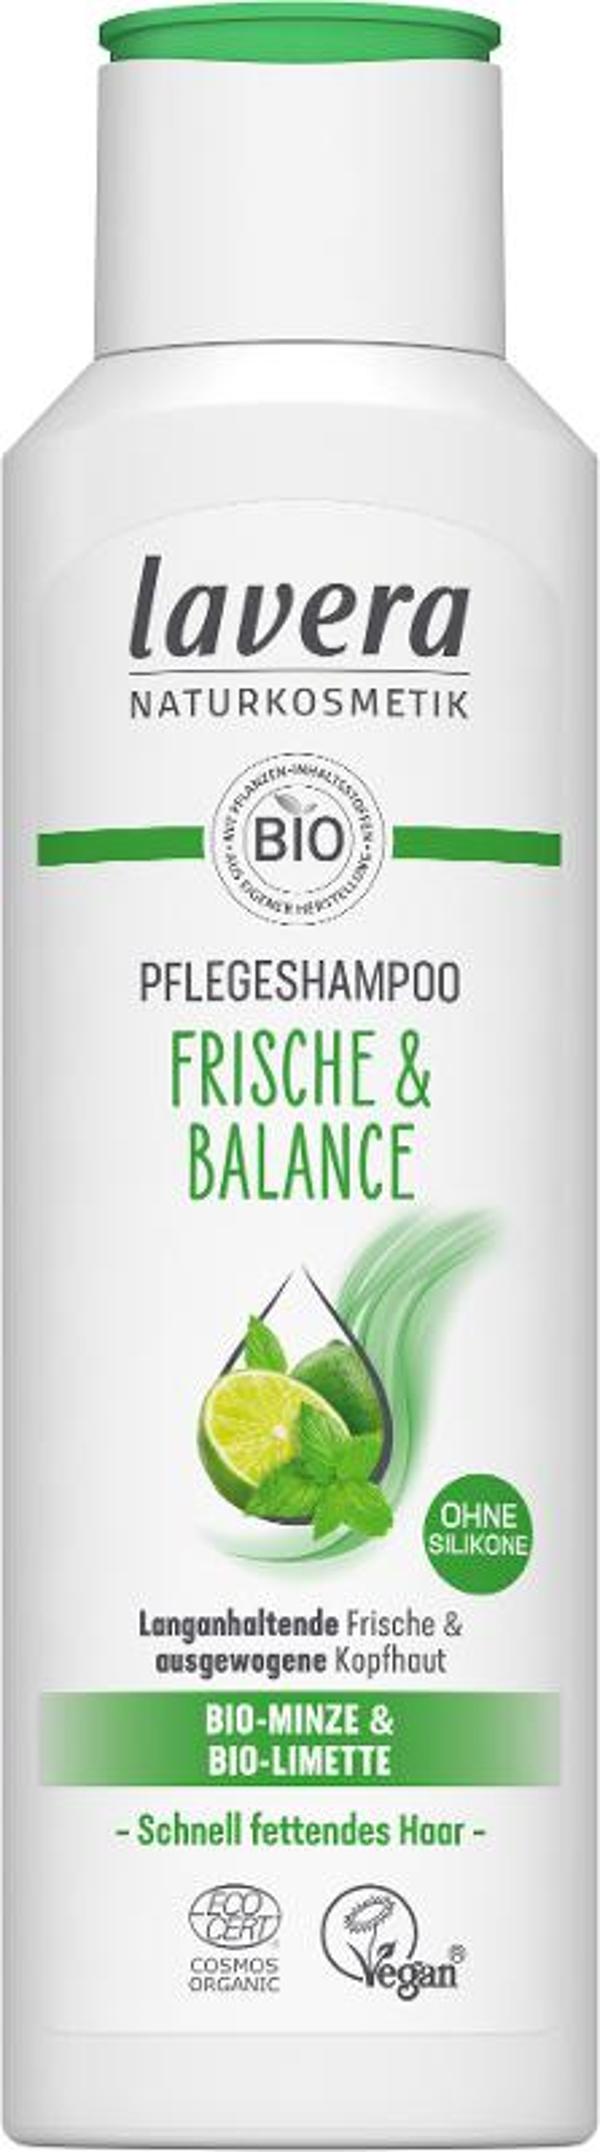 Produktfoto zu Frische & Balance Pflegeshampoo, 250 ml